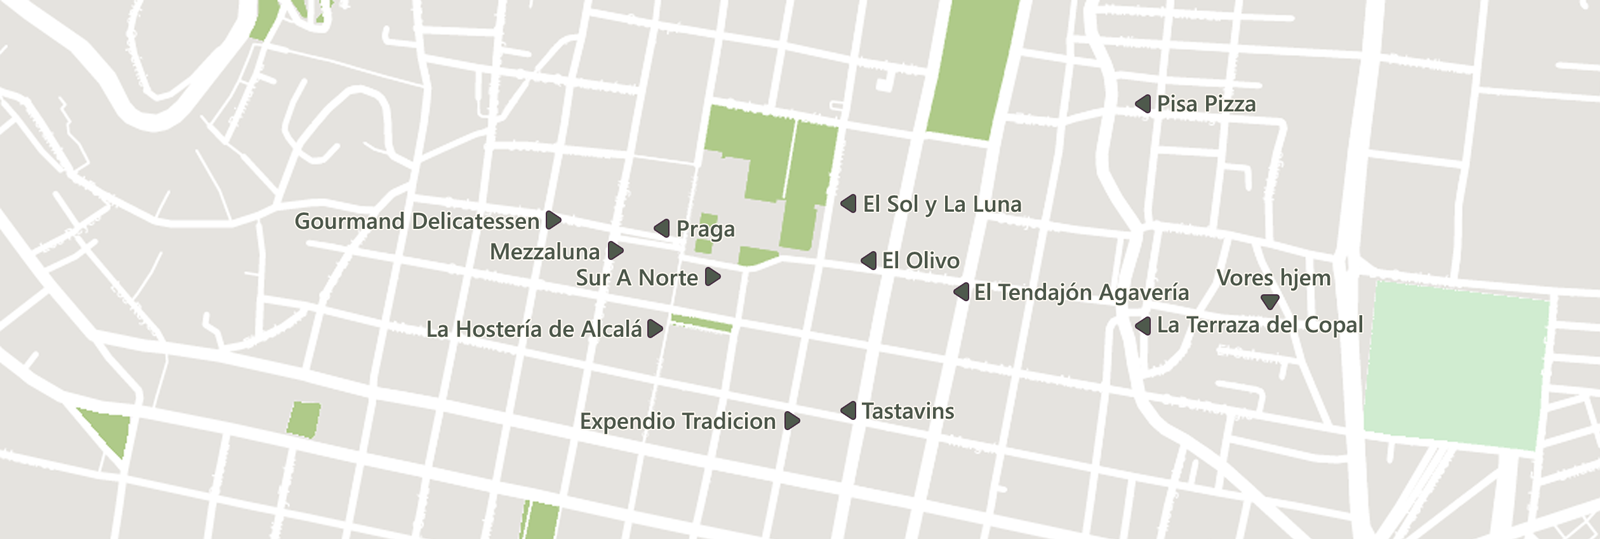 Restauranterne i Oaxaca